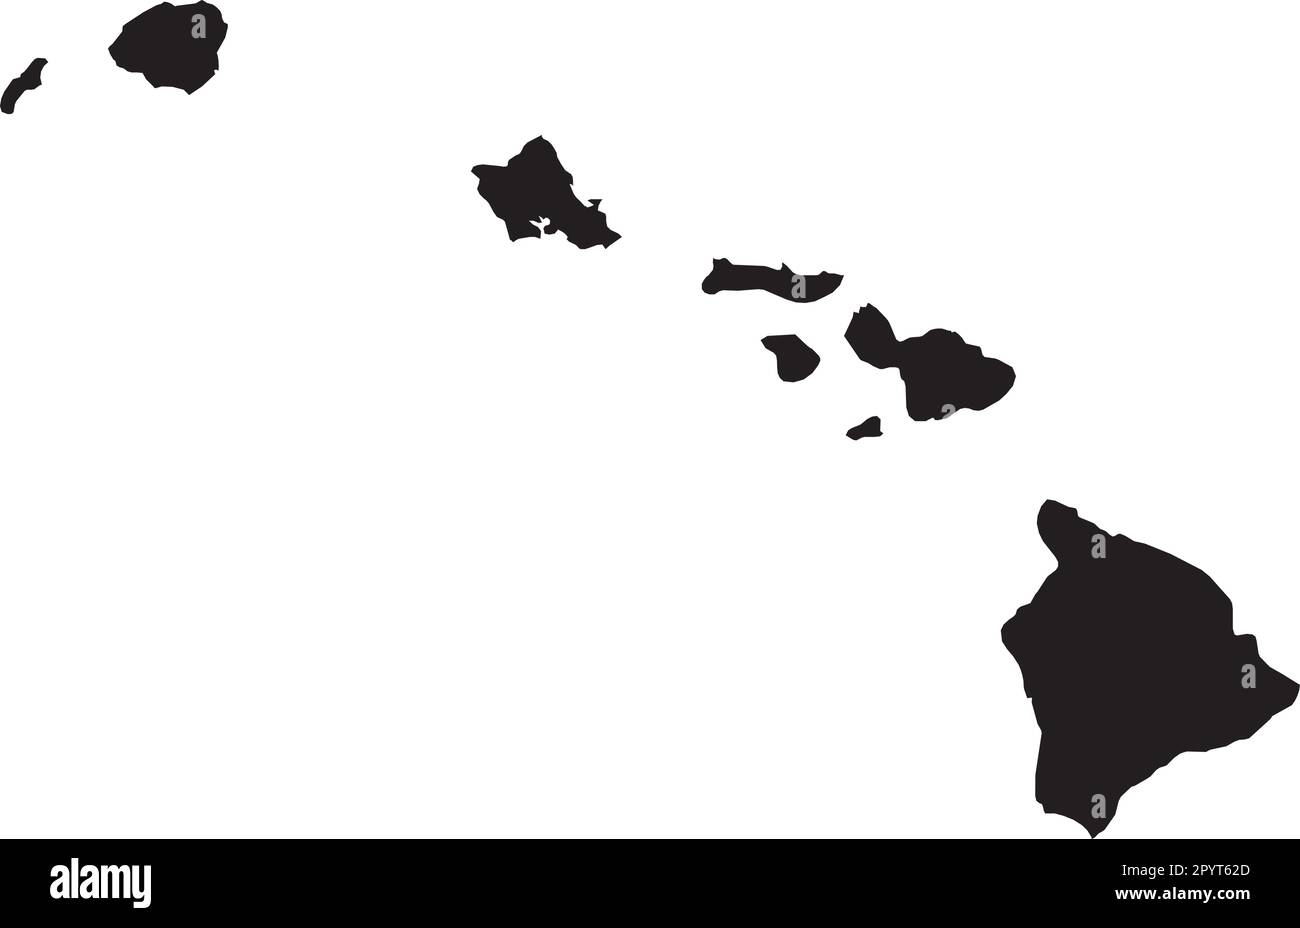 SCHWARZE CMYK-Farbkarte von HAWAII, USA Stock Vektor